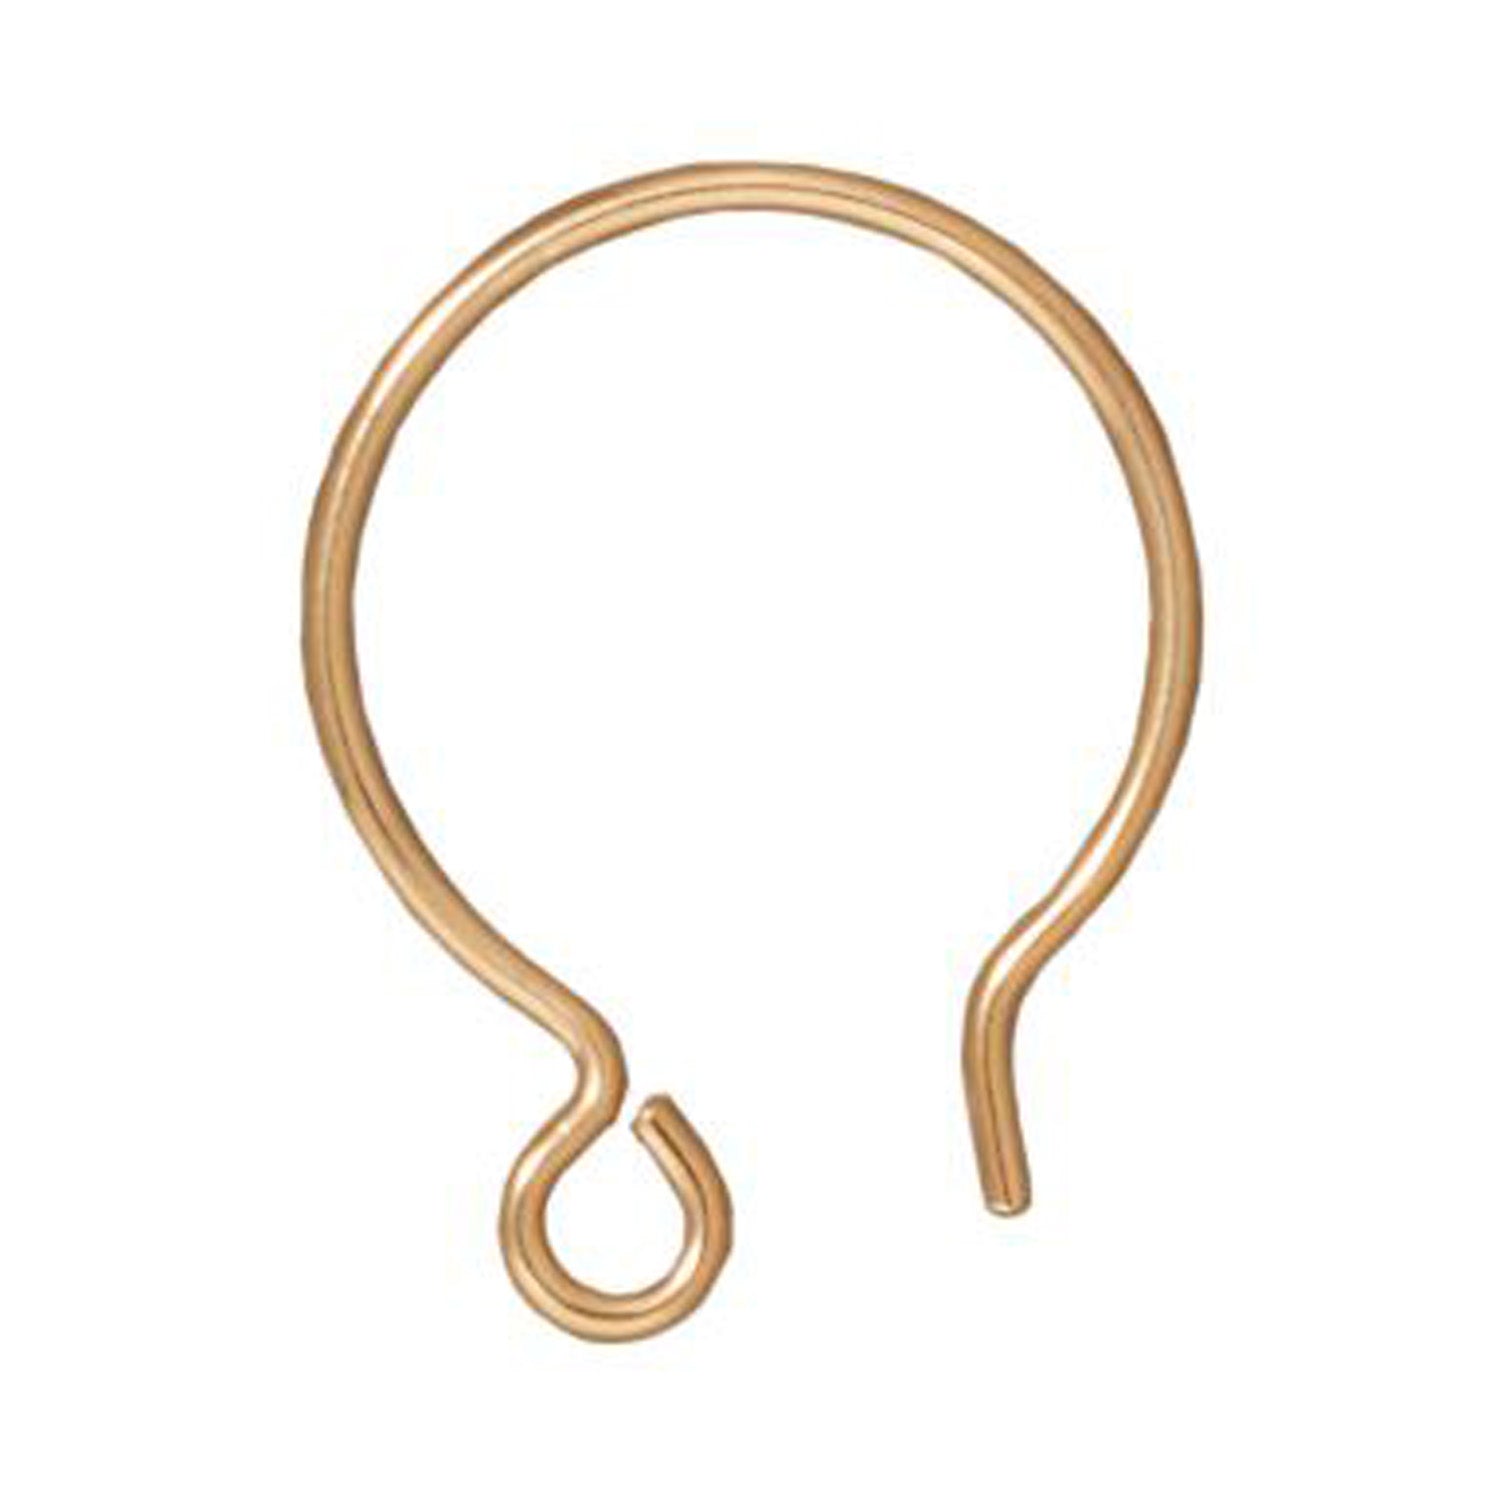 Wholesale Fern Hoop Earrings for Jewelry Making - TierraCast